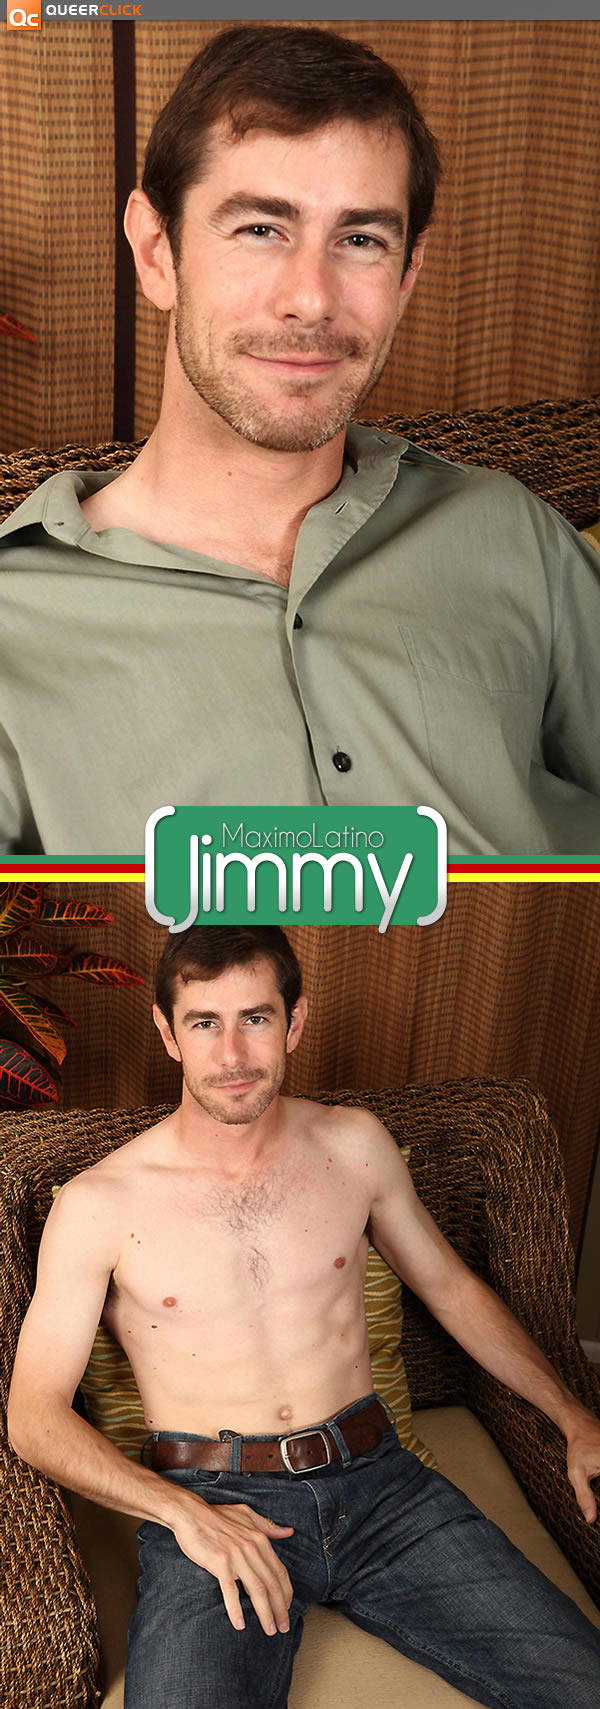 Maximo Latino: Jimmy